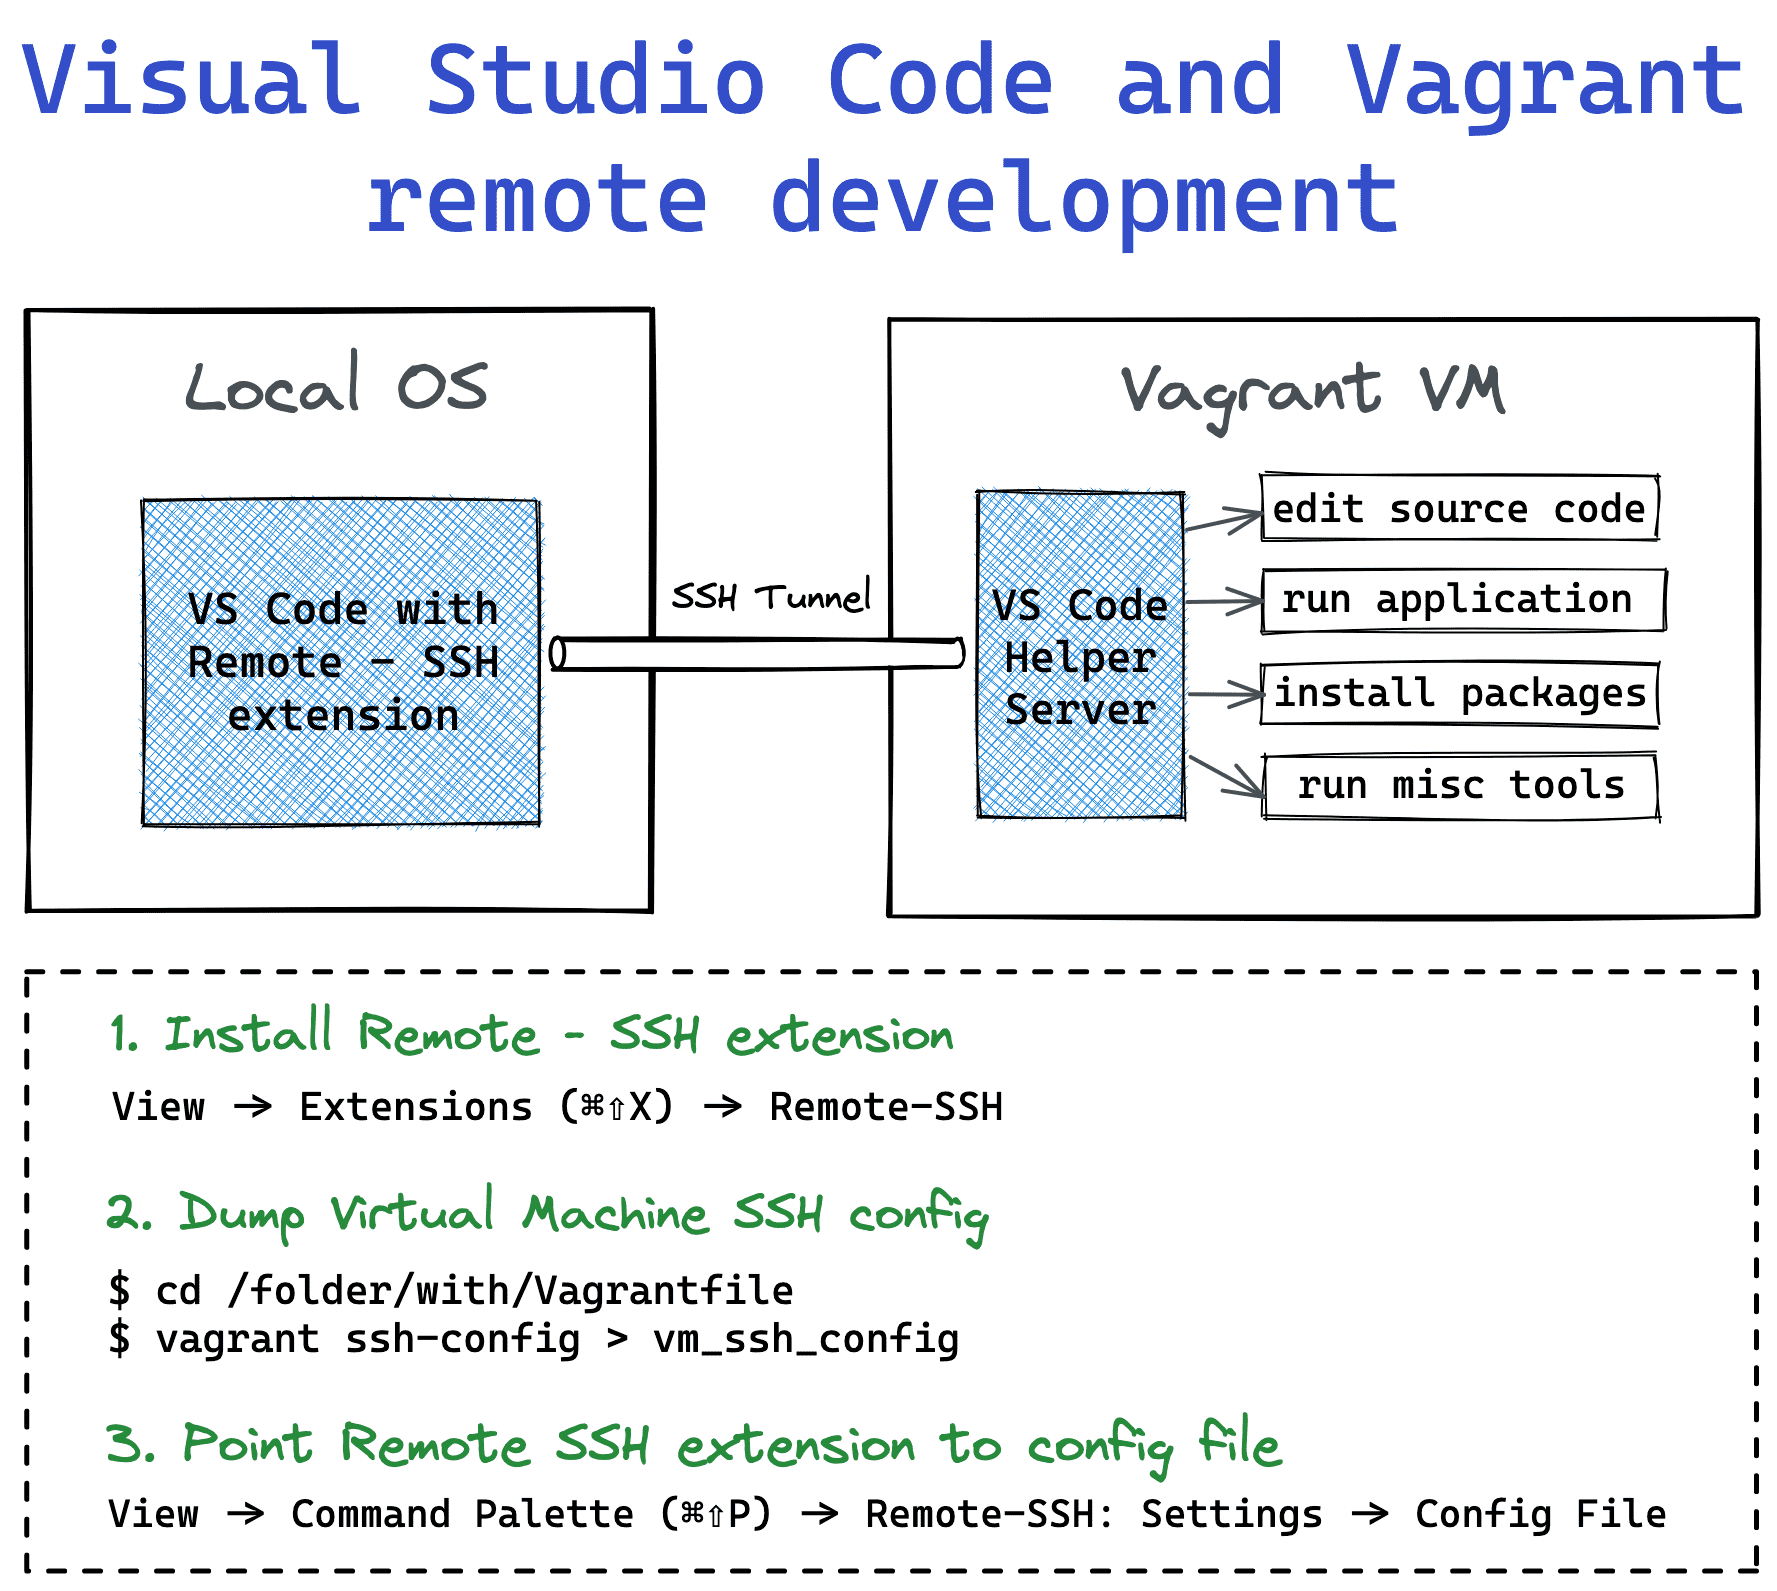 Visual Studio Code Remote Development with Vagrant Virtual Machine